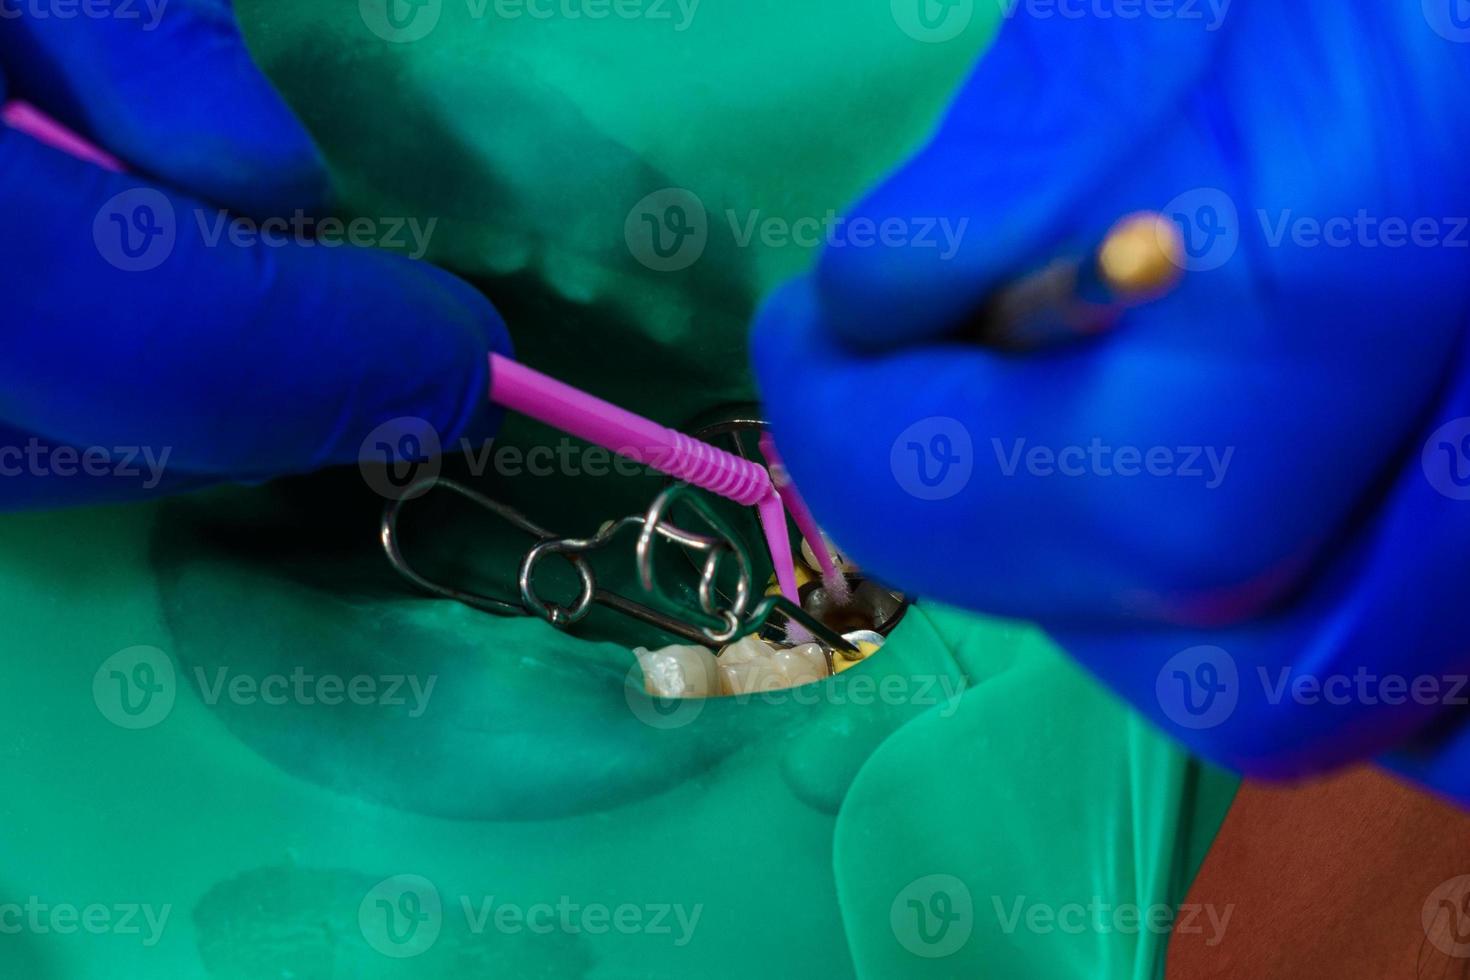 Arzt verwendet Kofferdam, um Zähne zu behandeln, foto